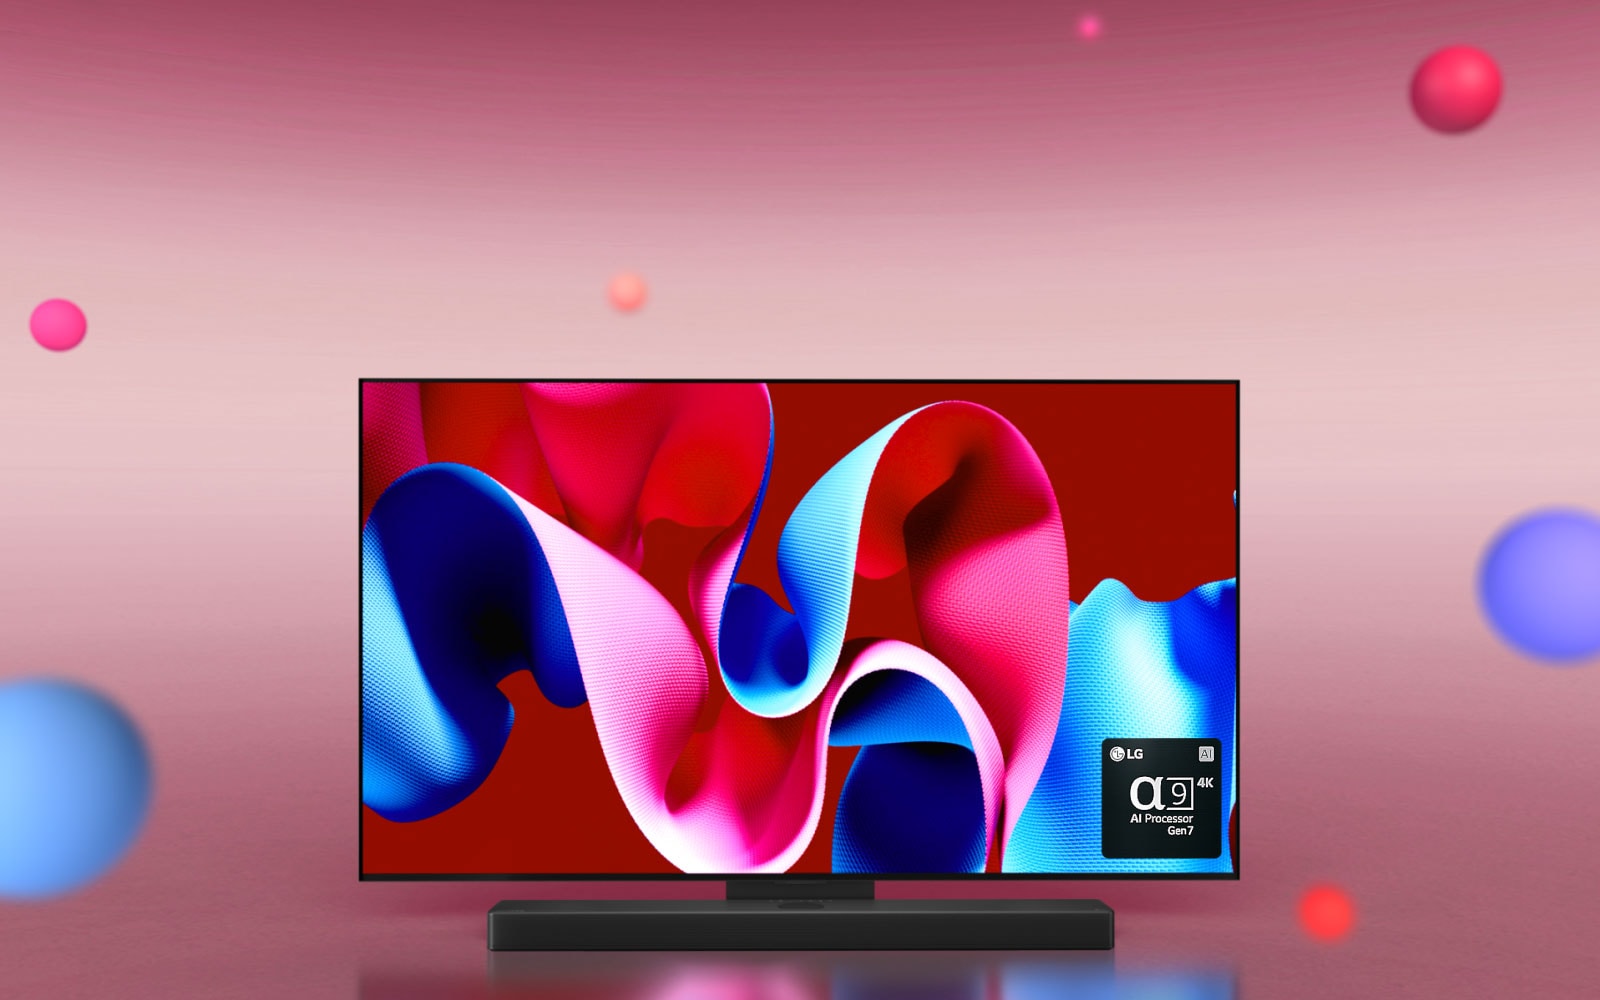 Wir sehen den LG OLED evo TV C4 im 45-Grad-Winkel nach rechts gerichtet, mit einem abstrakten Kunstwerk in Lila und Orange auf dem Bildschirm vor einem orangen Hintergrund mit 3D-Kugeln. Der OLED TV dreht sich nach vorne. Unten rechts ist ein Logo des LG alpha 9 Gen7 4K AI-Prozessors zu sehen.